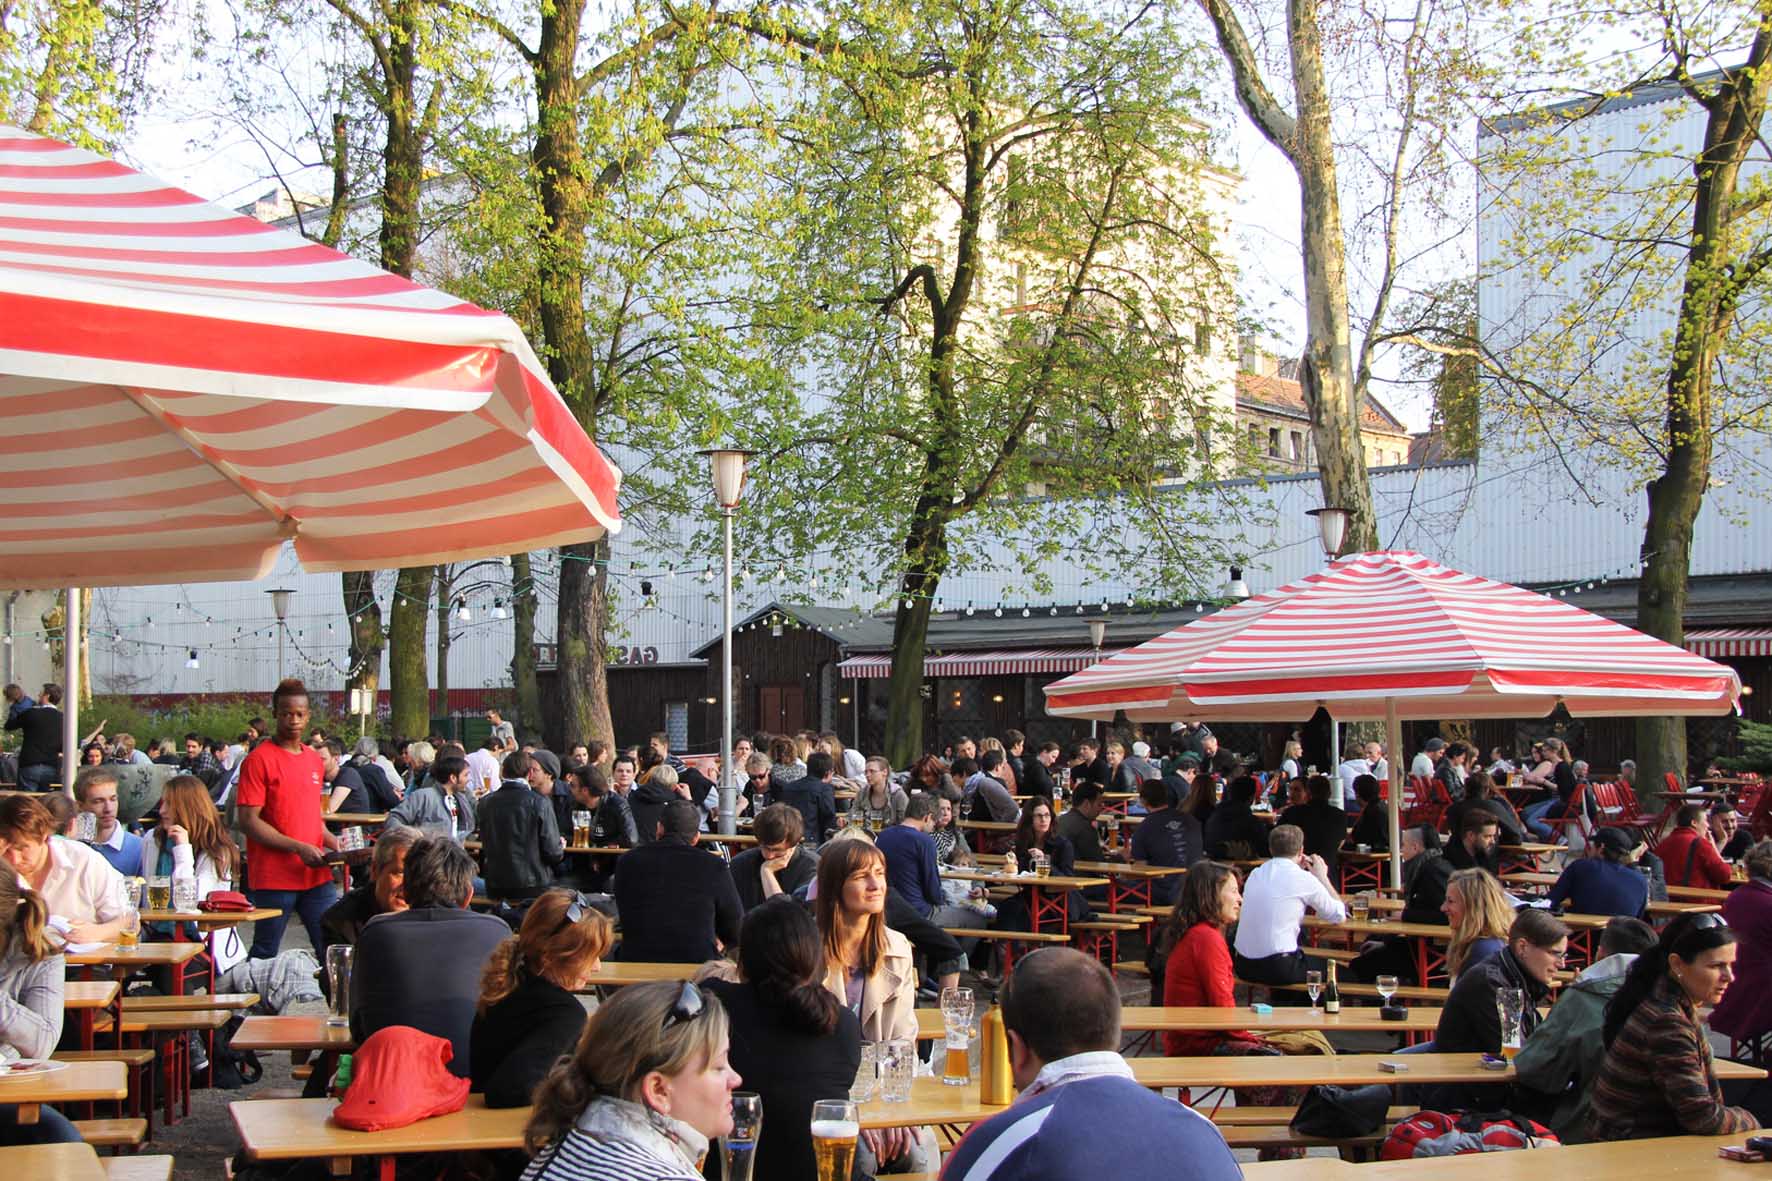 The crowd at PraterGarten Beer Garden in Berlin